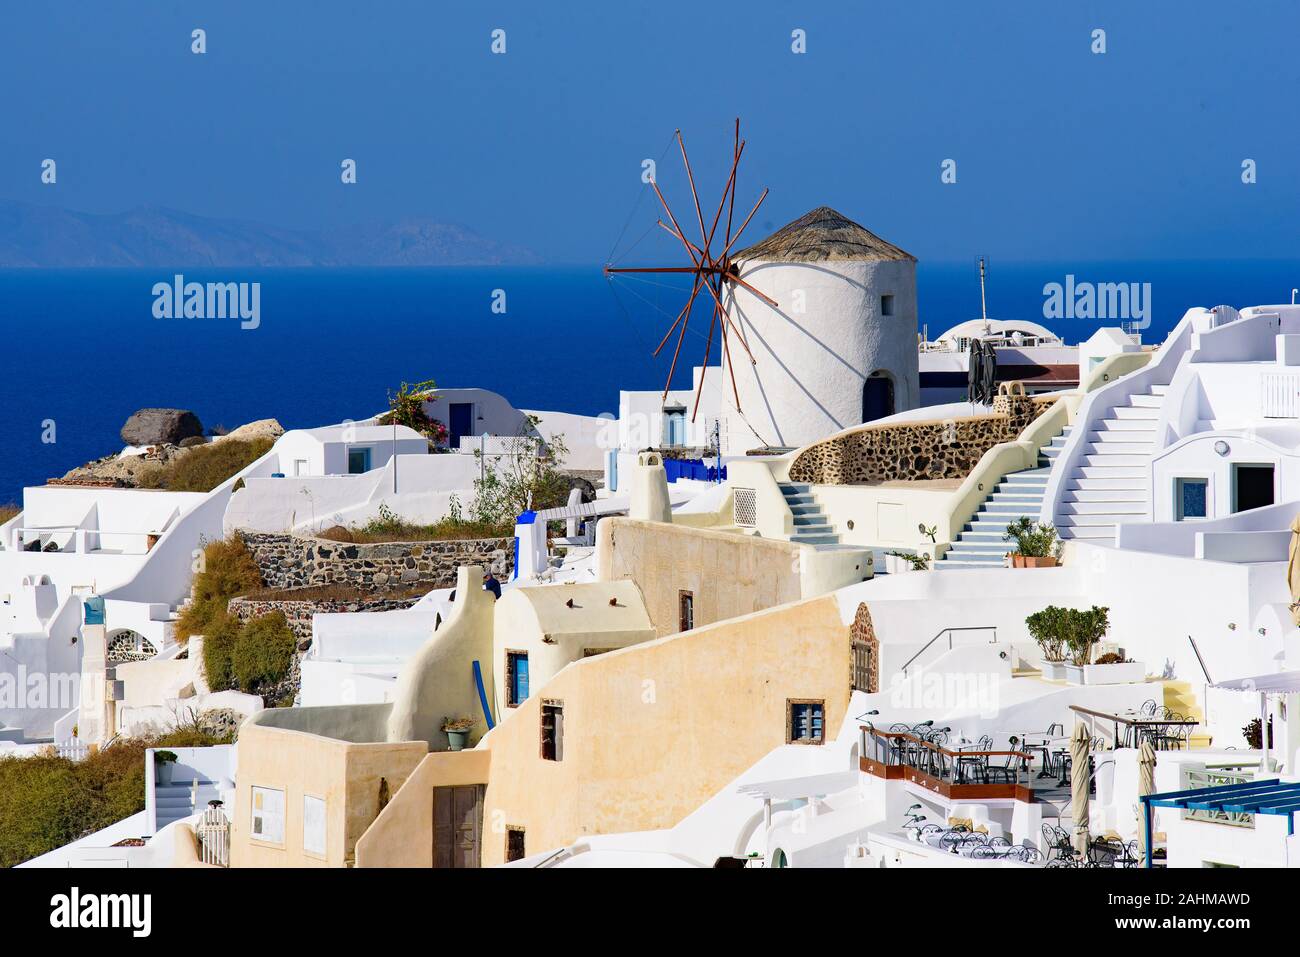 El molino de viento y edificios blancos tradicionales hacia el mar Mediterráneo en Oia, Santorini, Grecia Foto de stock